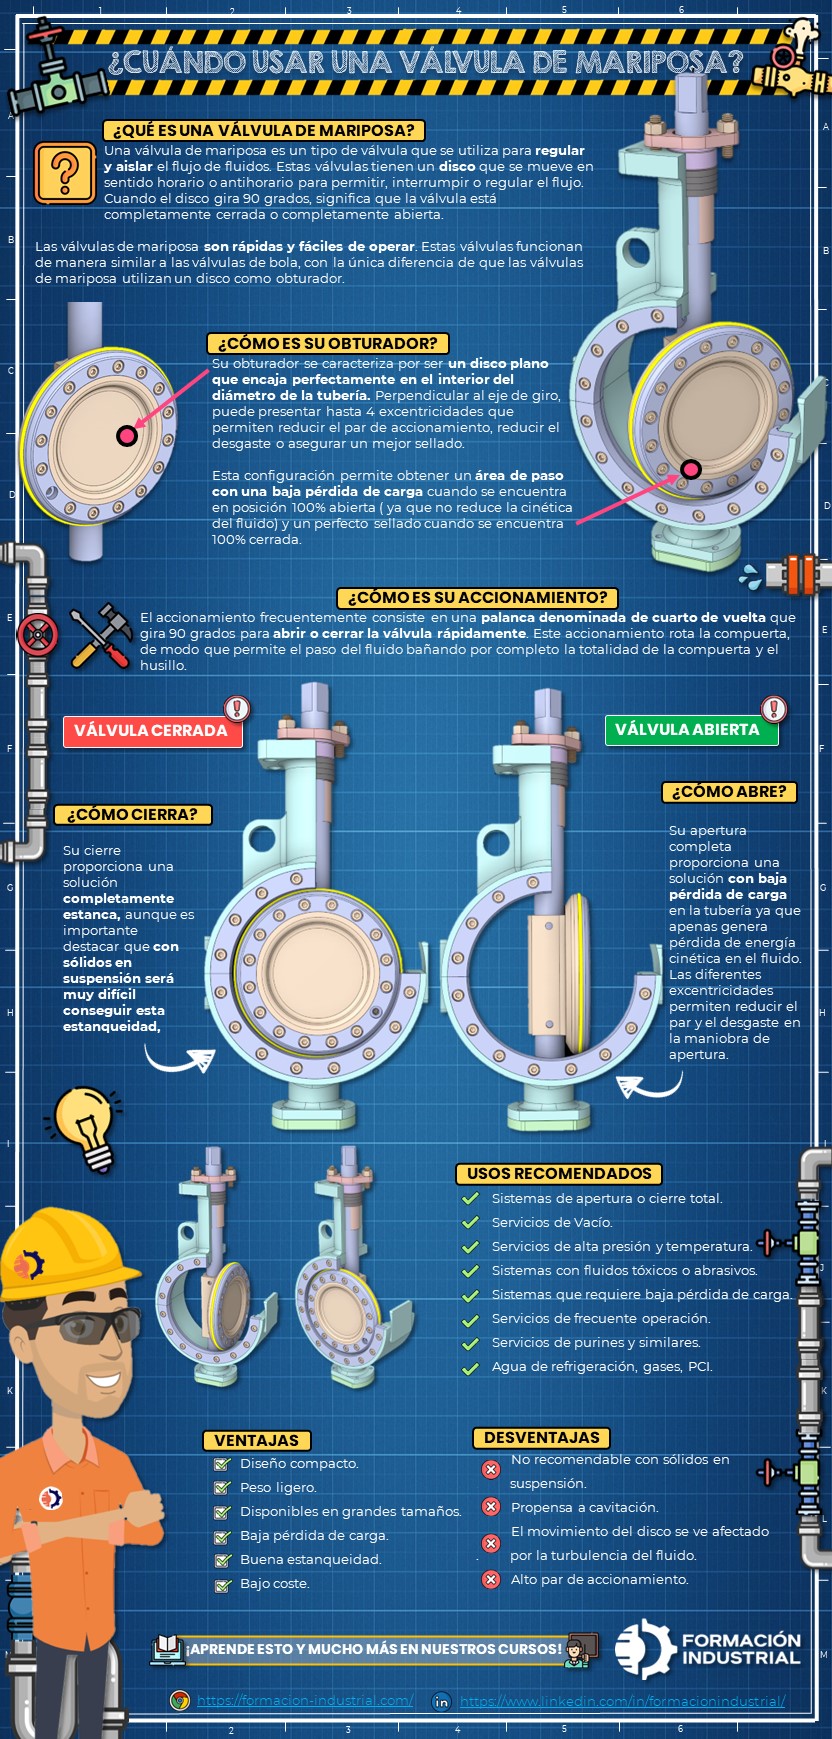 Infografía detallada de los usos de las válvulas de mariposa en sistemas de control de fluidos